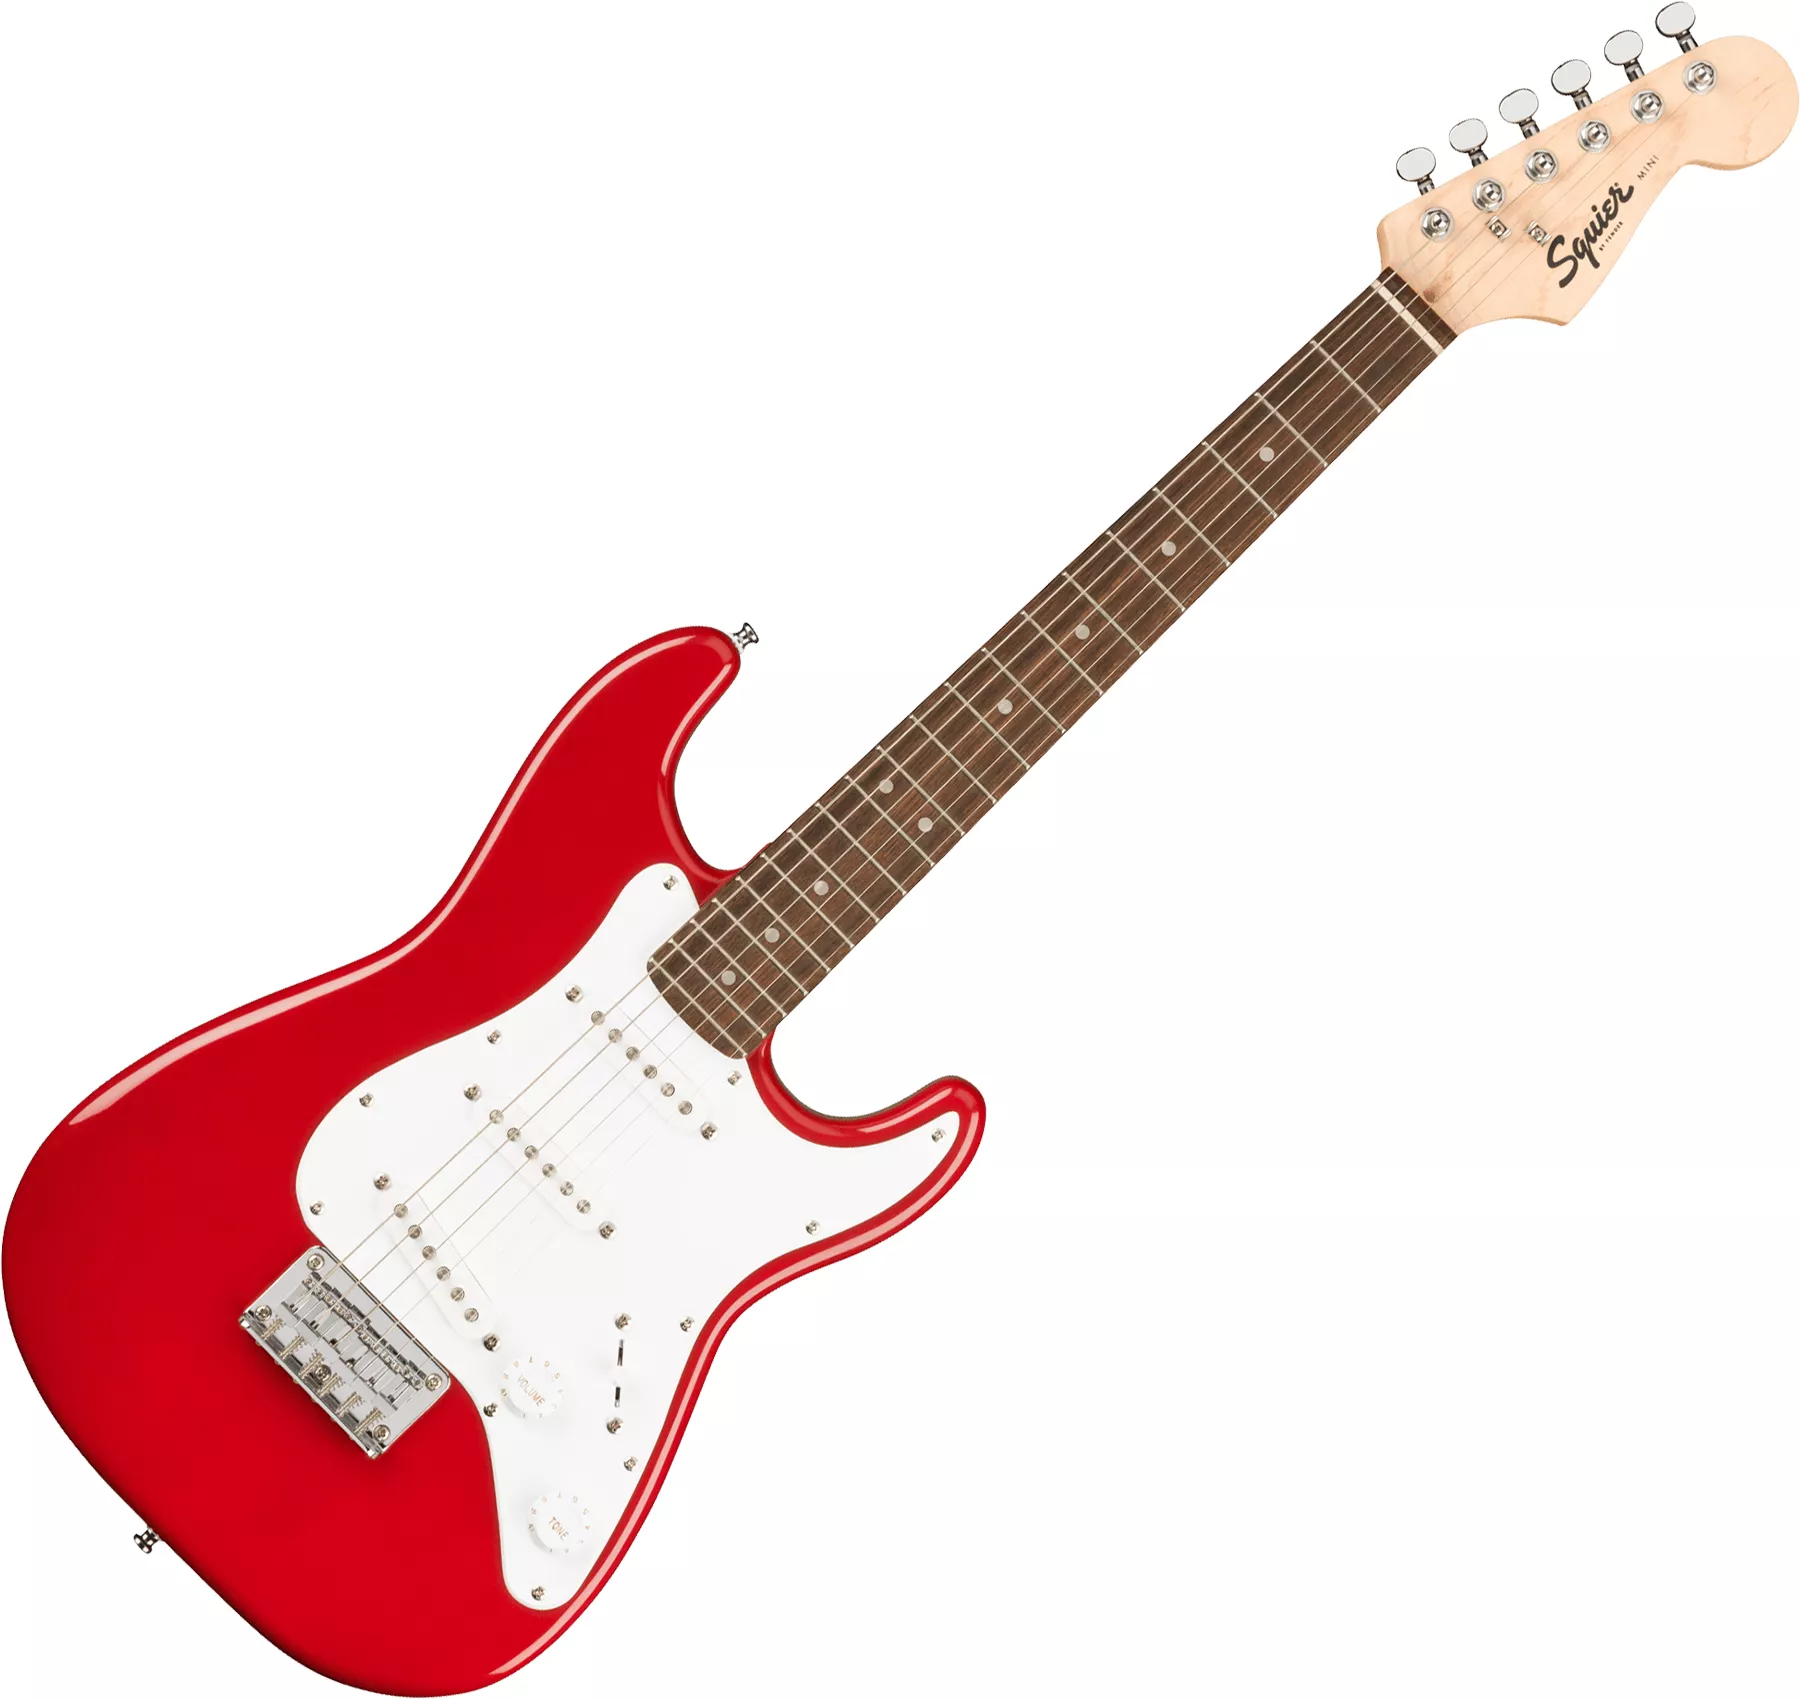 Fichier STL gratuit Mini guitare type strat - La mini strat